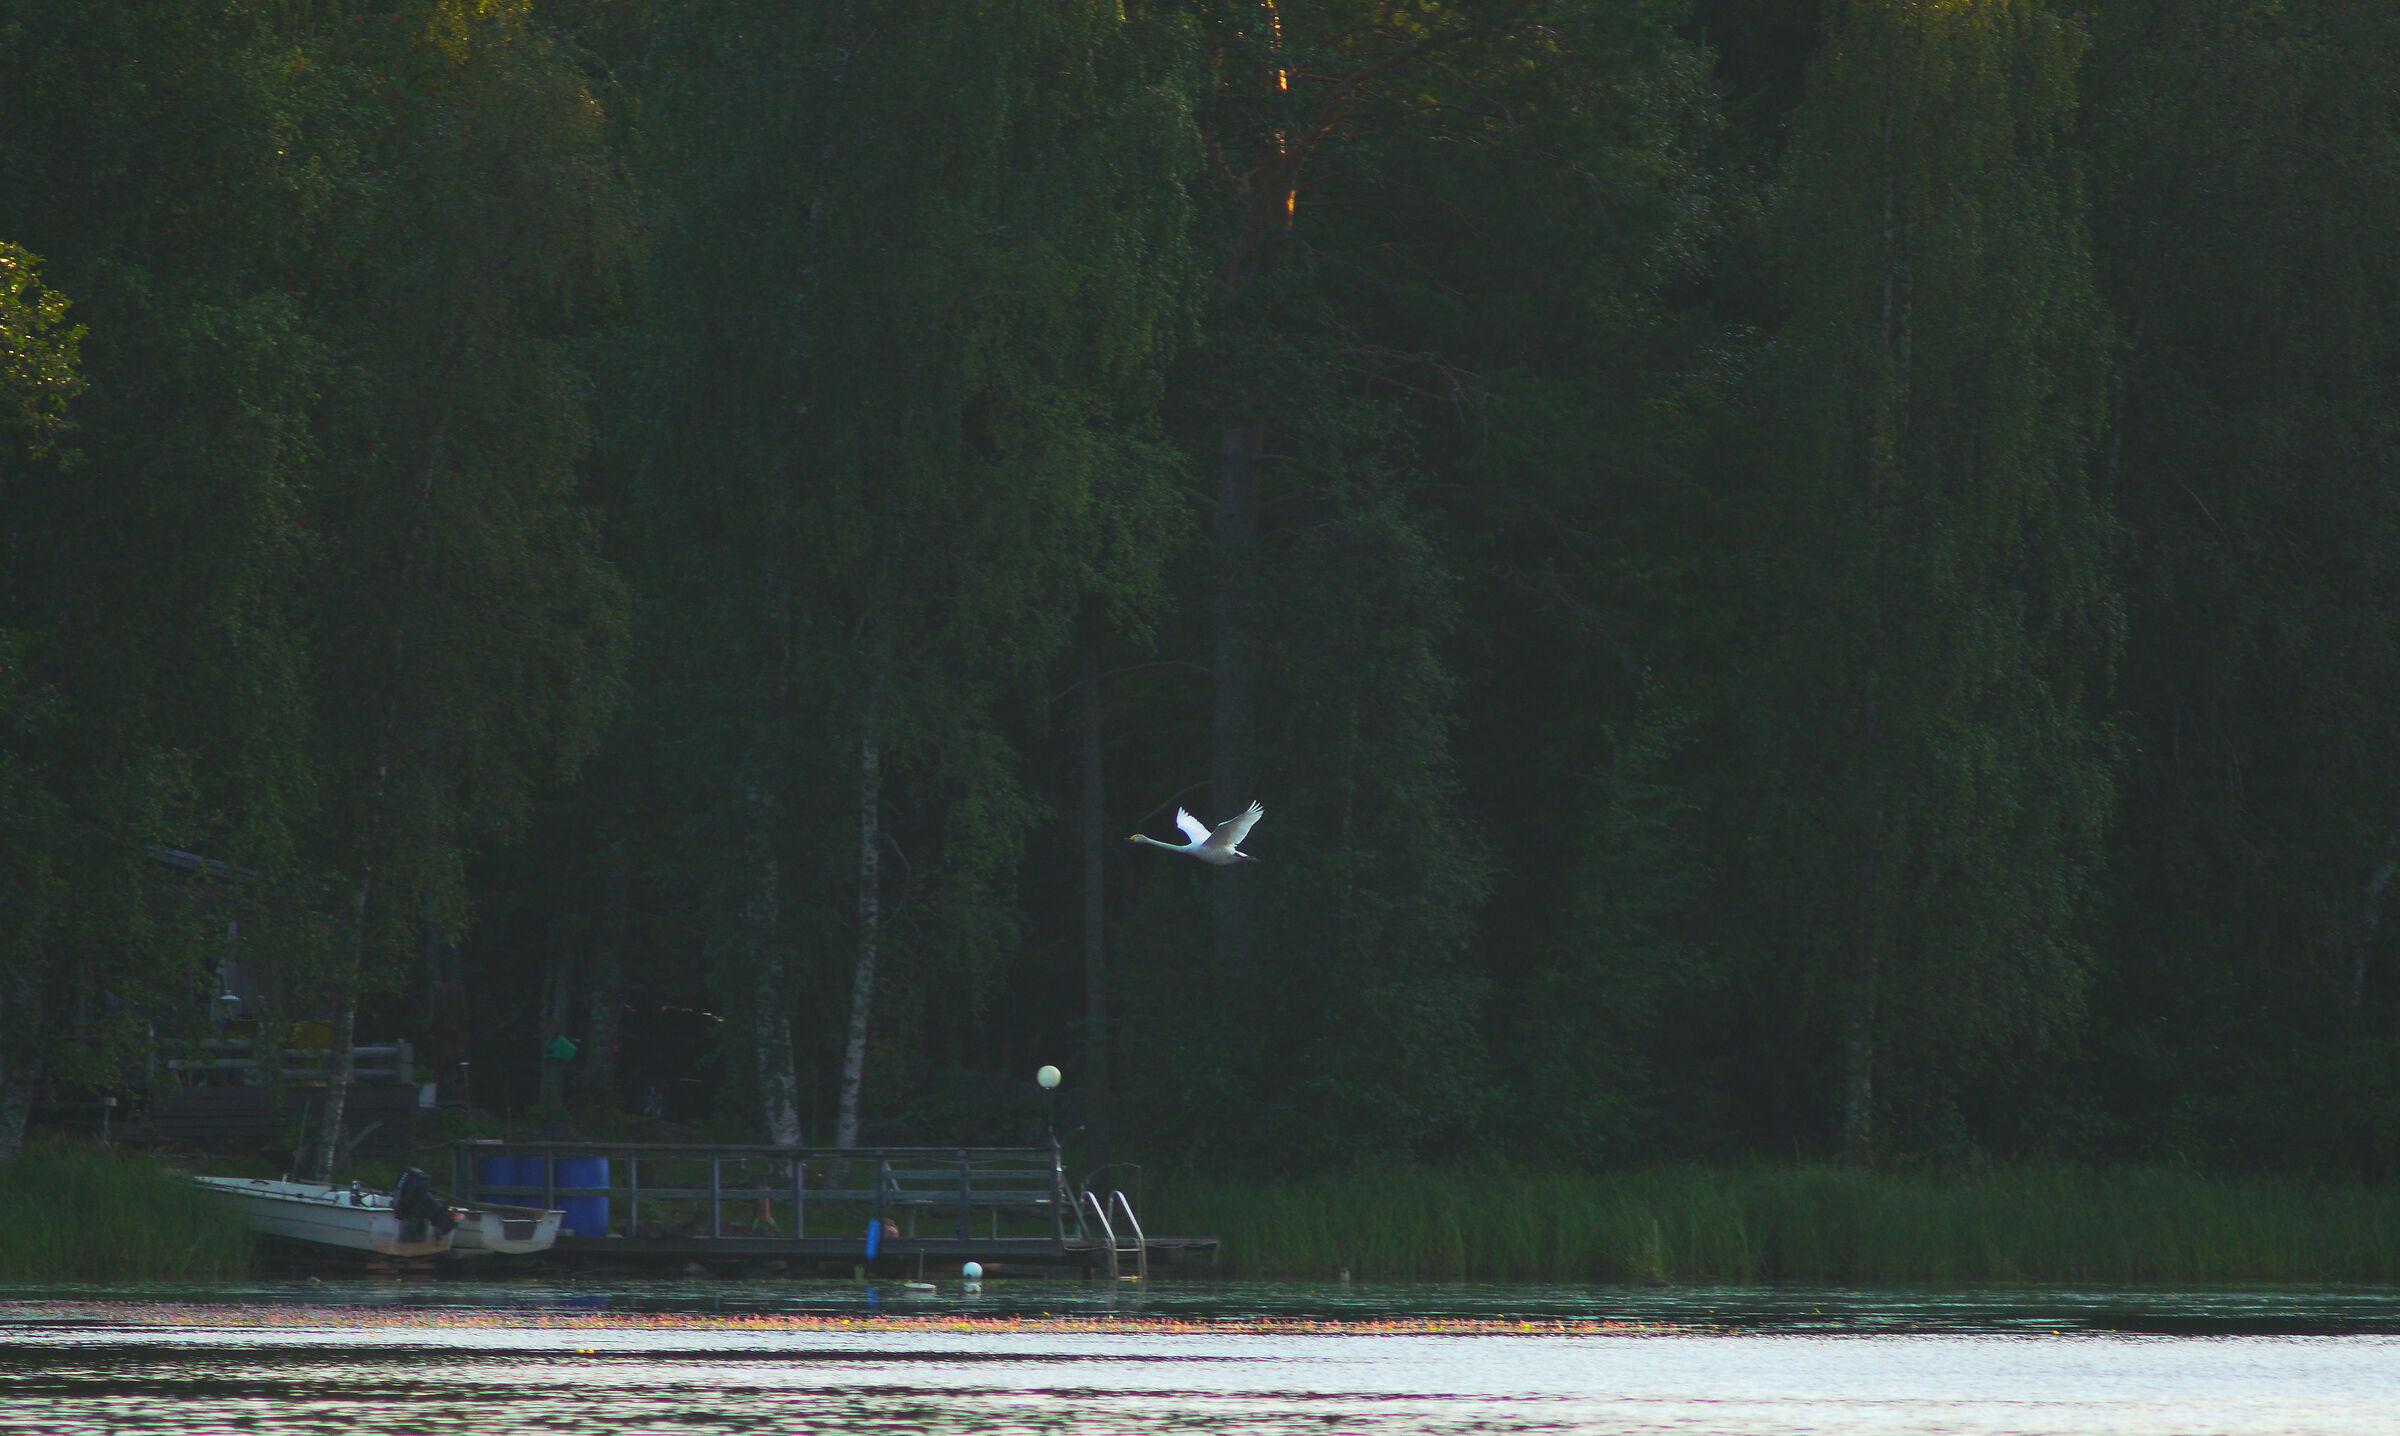 swan in flight - South-East Finland...